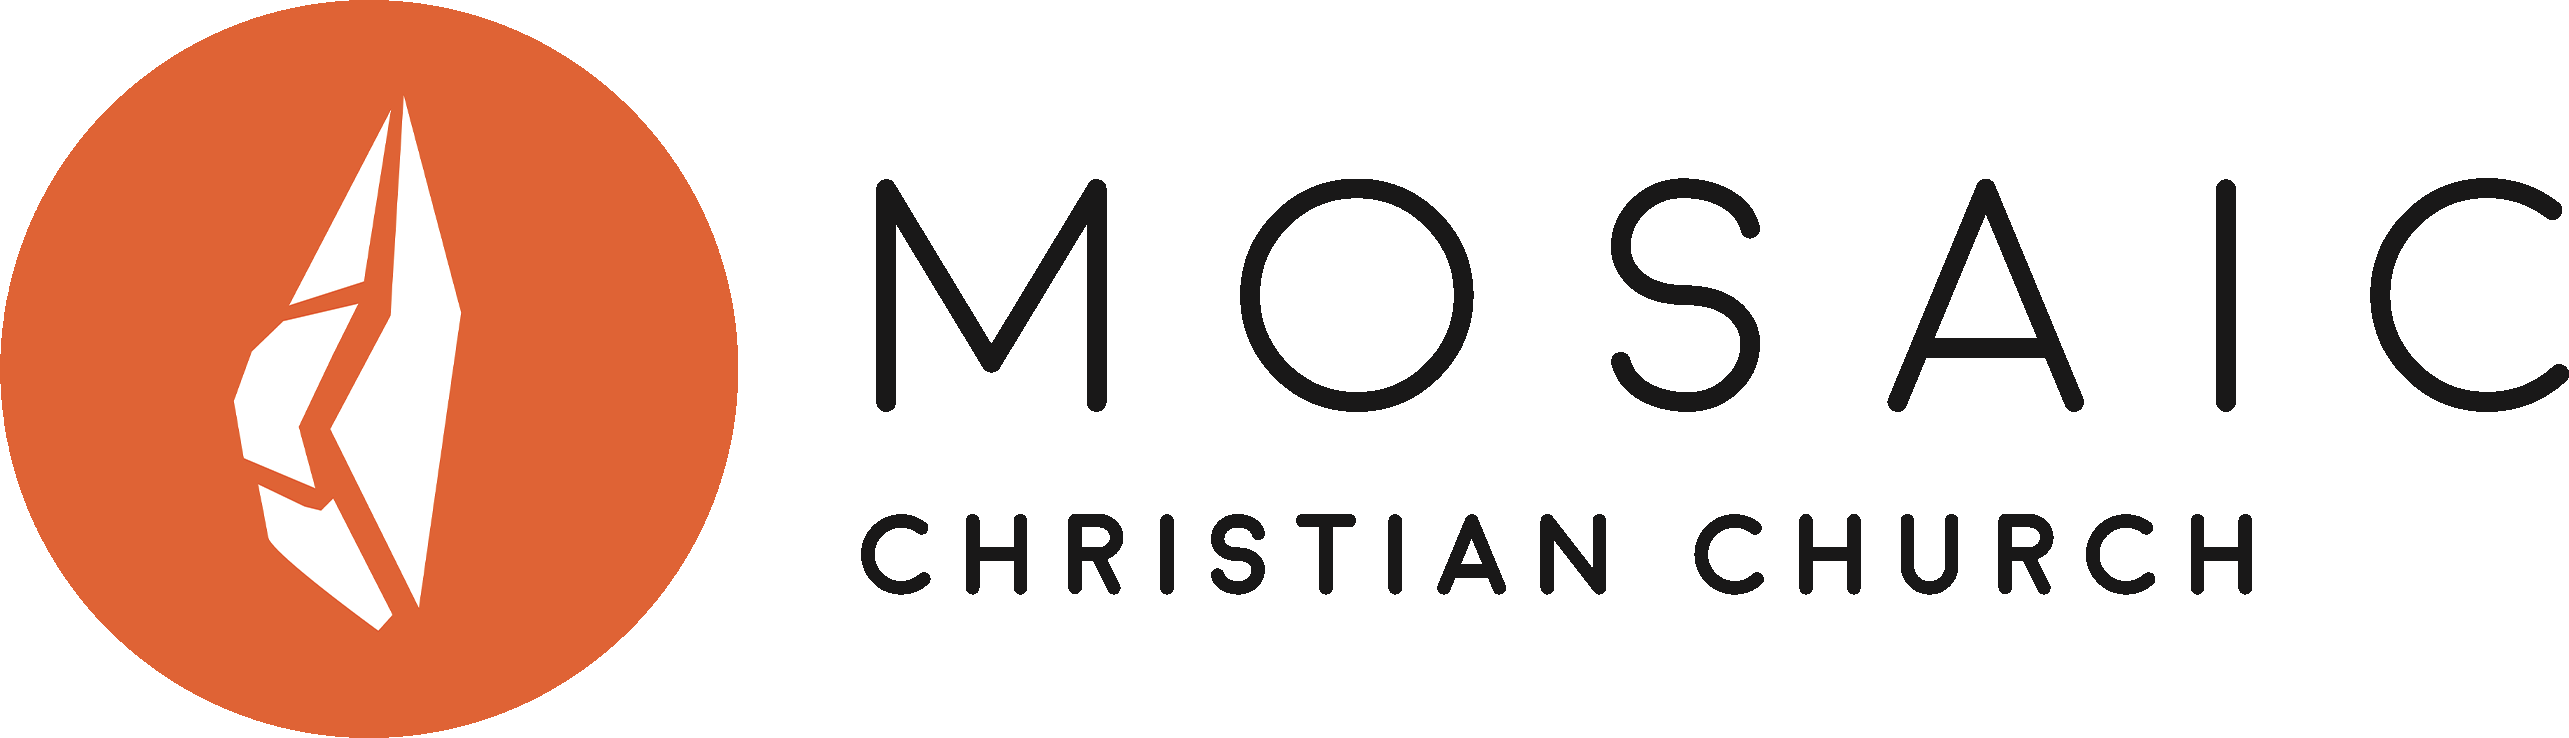 Mosaic Christian Church Logo